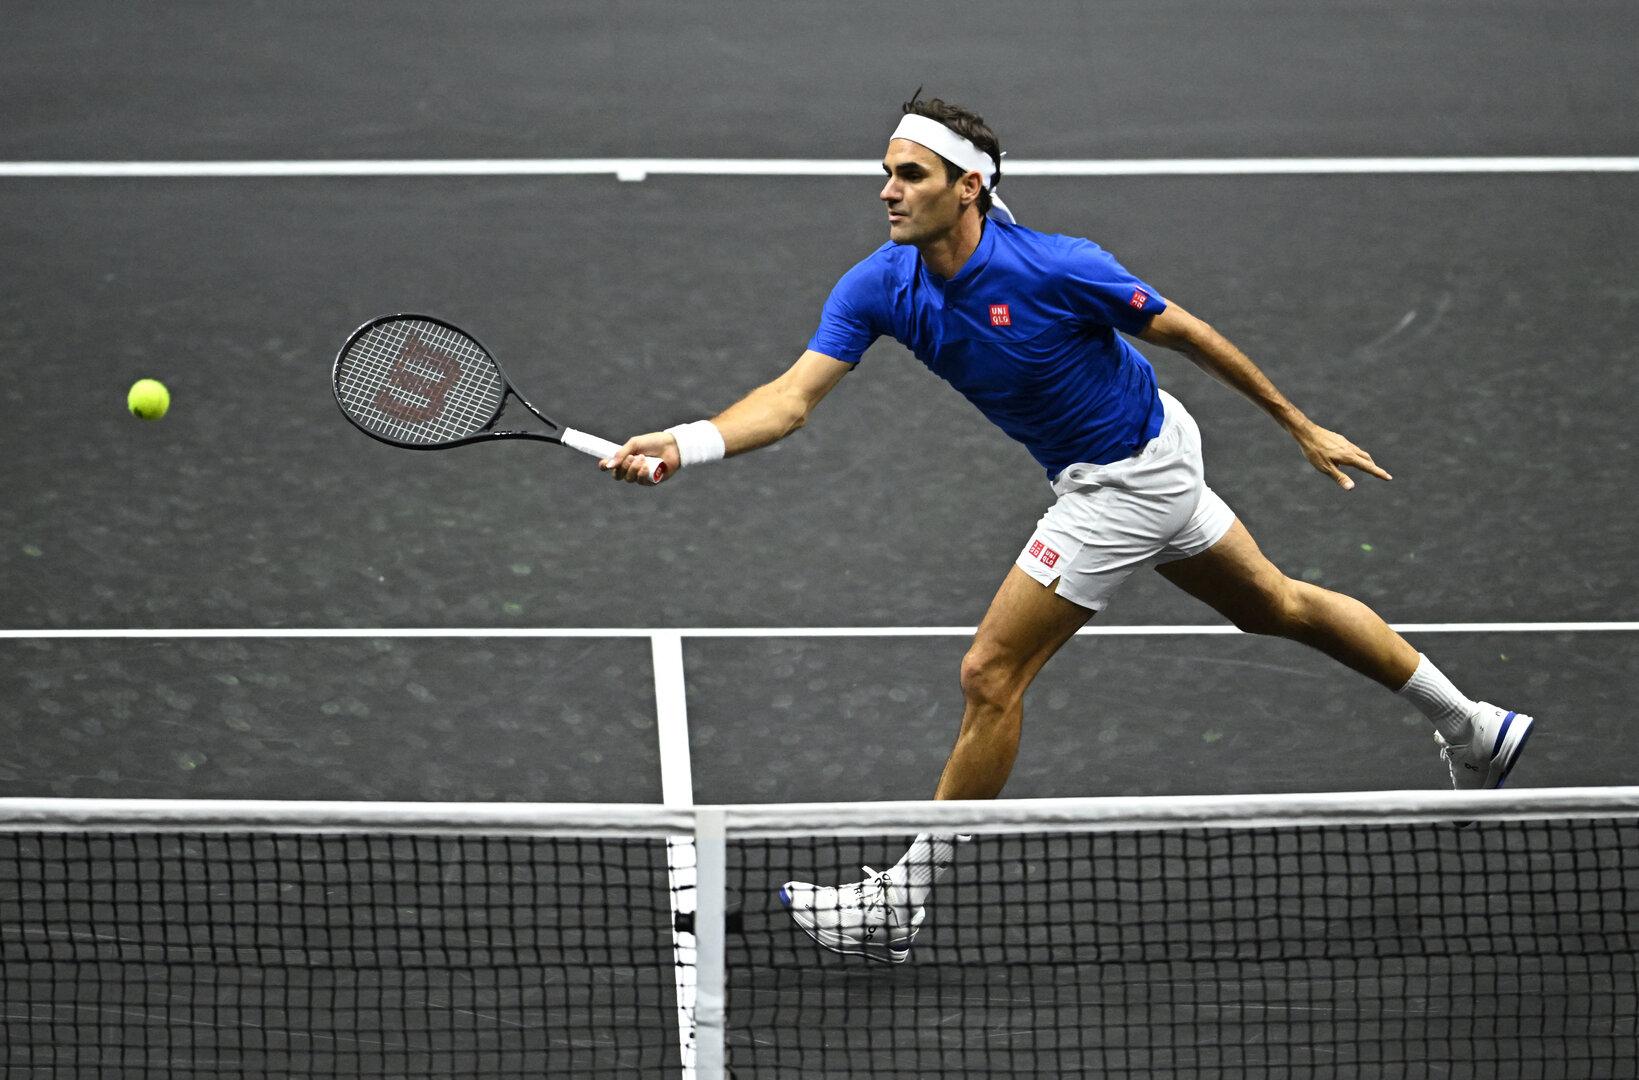 Knaller im Welttennis: Ein Comeback von Federer ist mehr als nur möglich